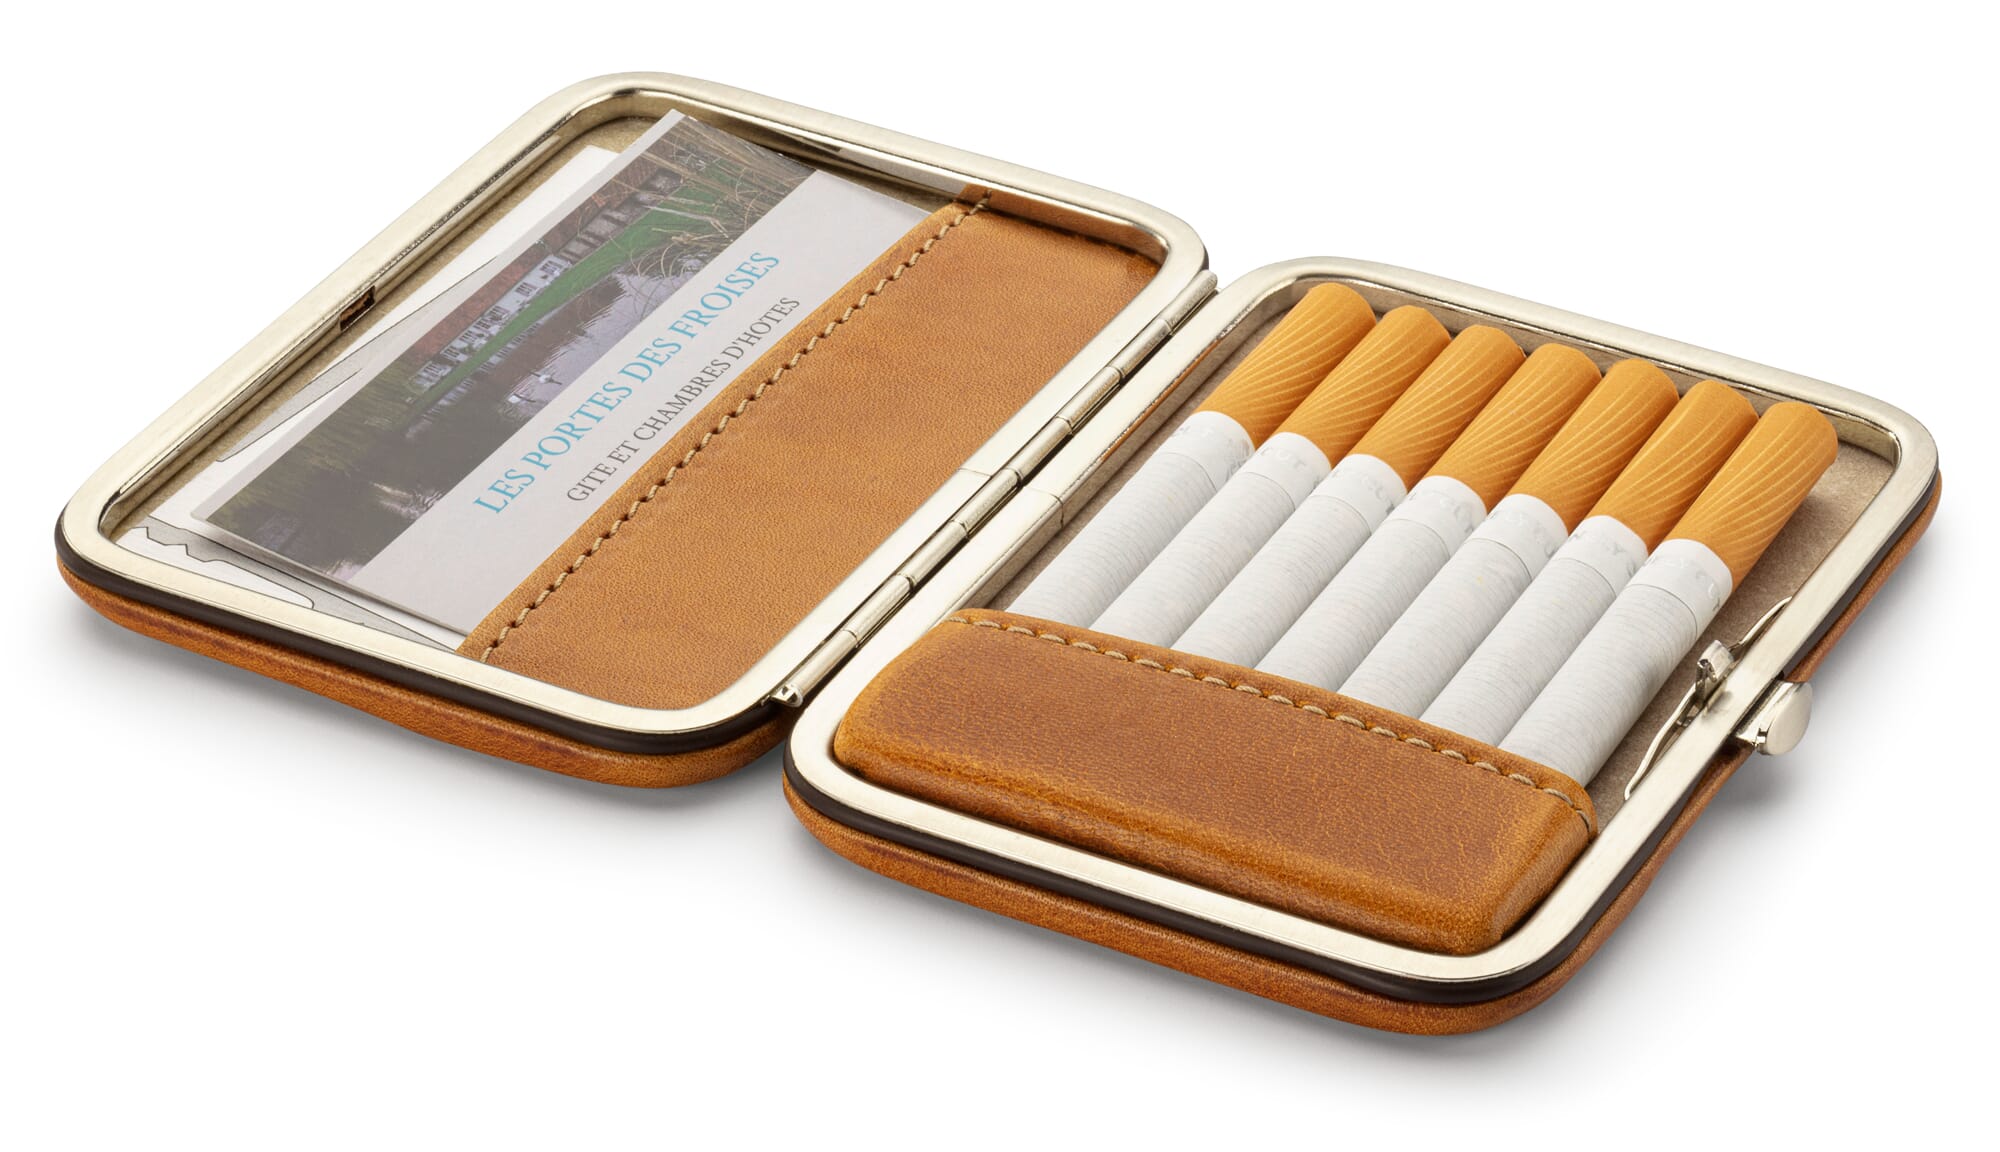 Cigarette cases